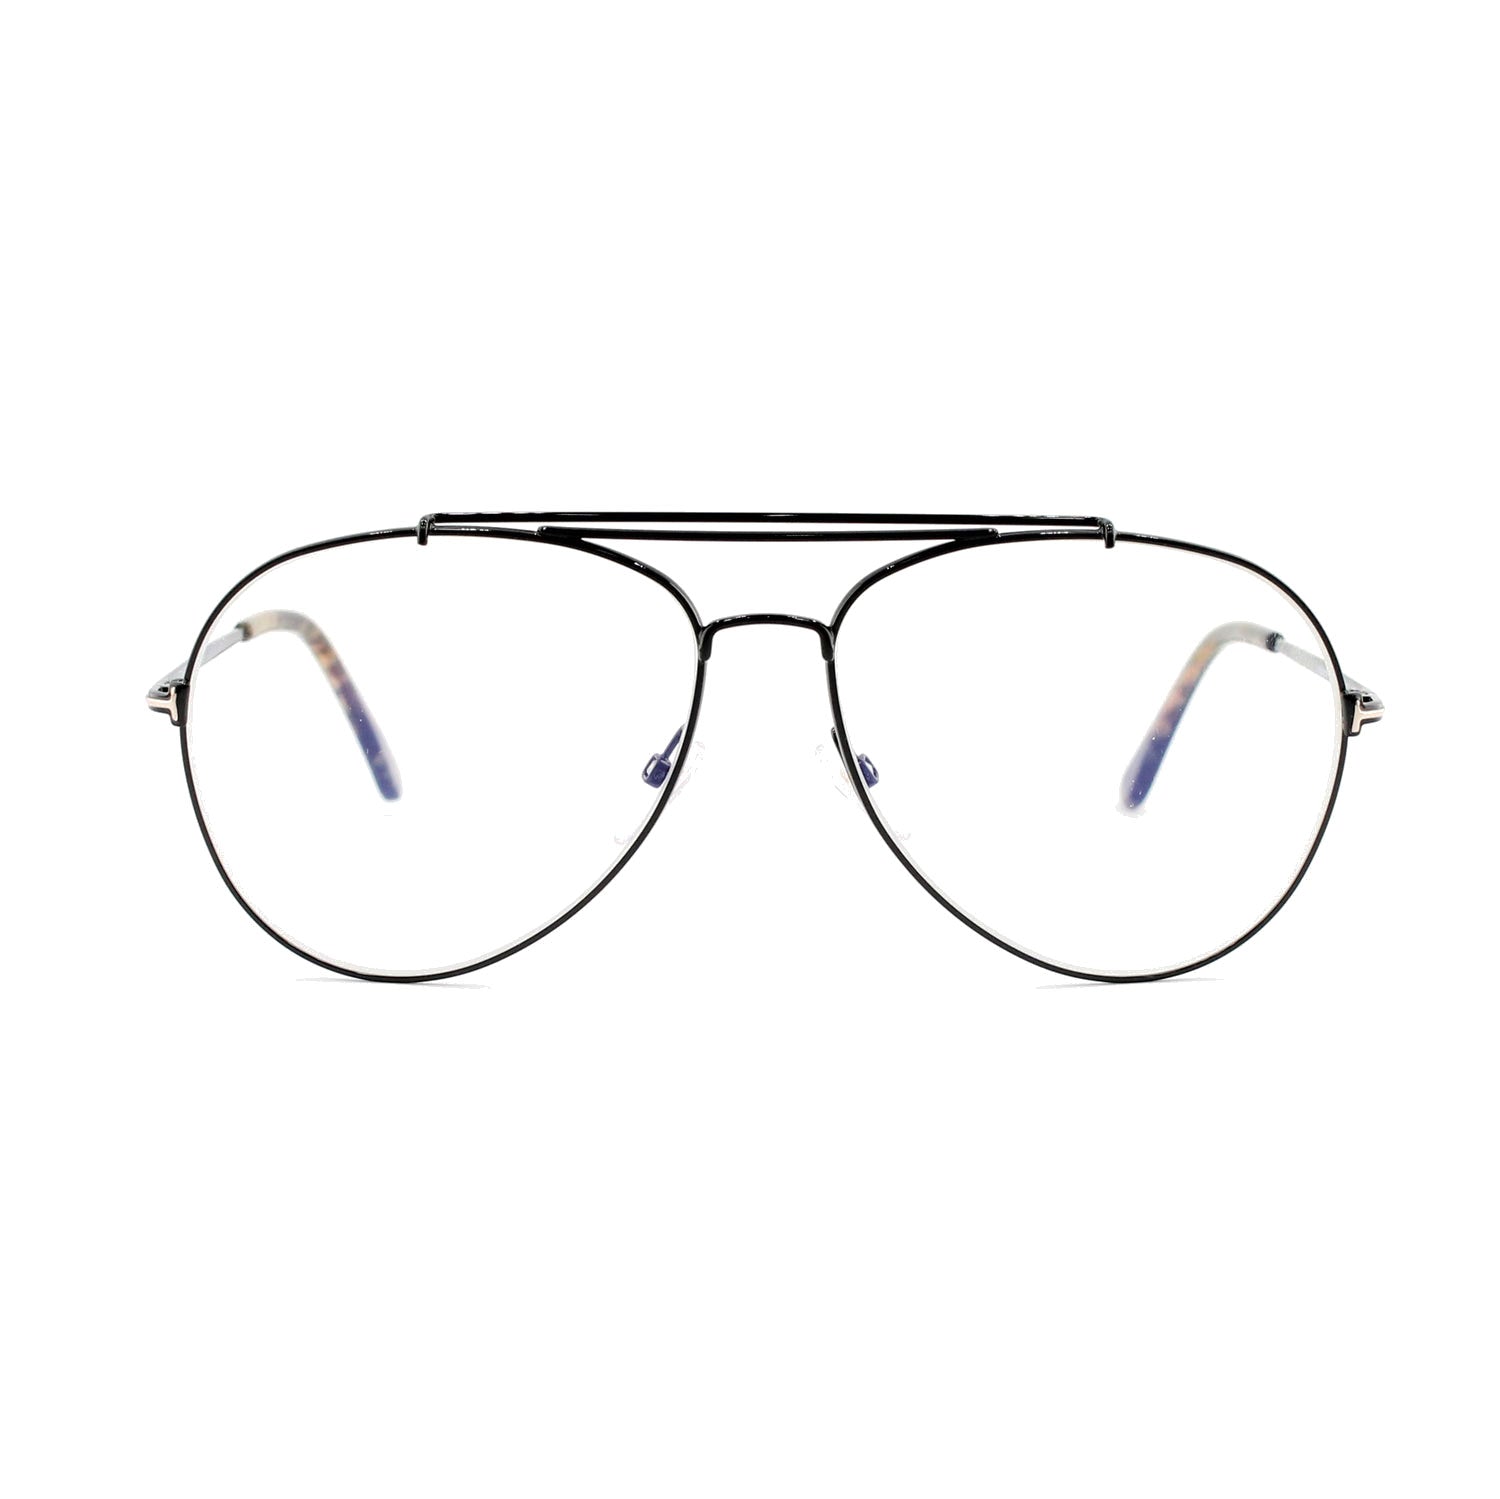 Tom Ford - Blue Light Glasses | Model TF 497 - Black